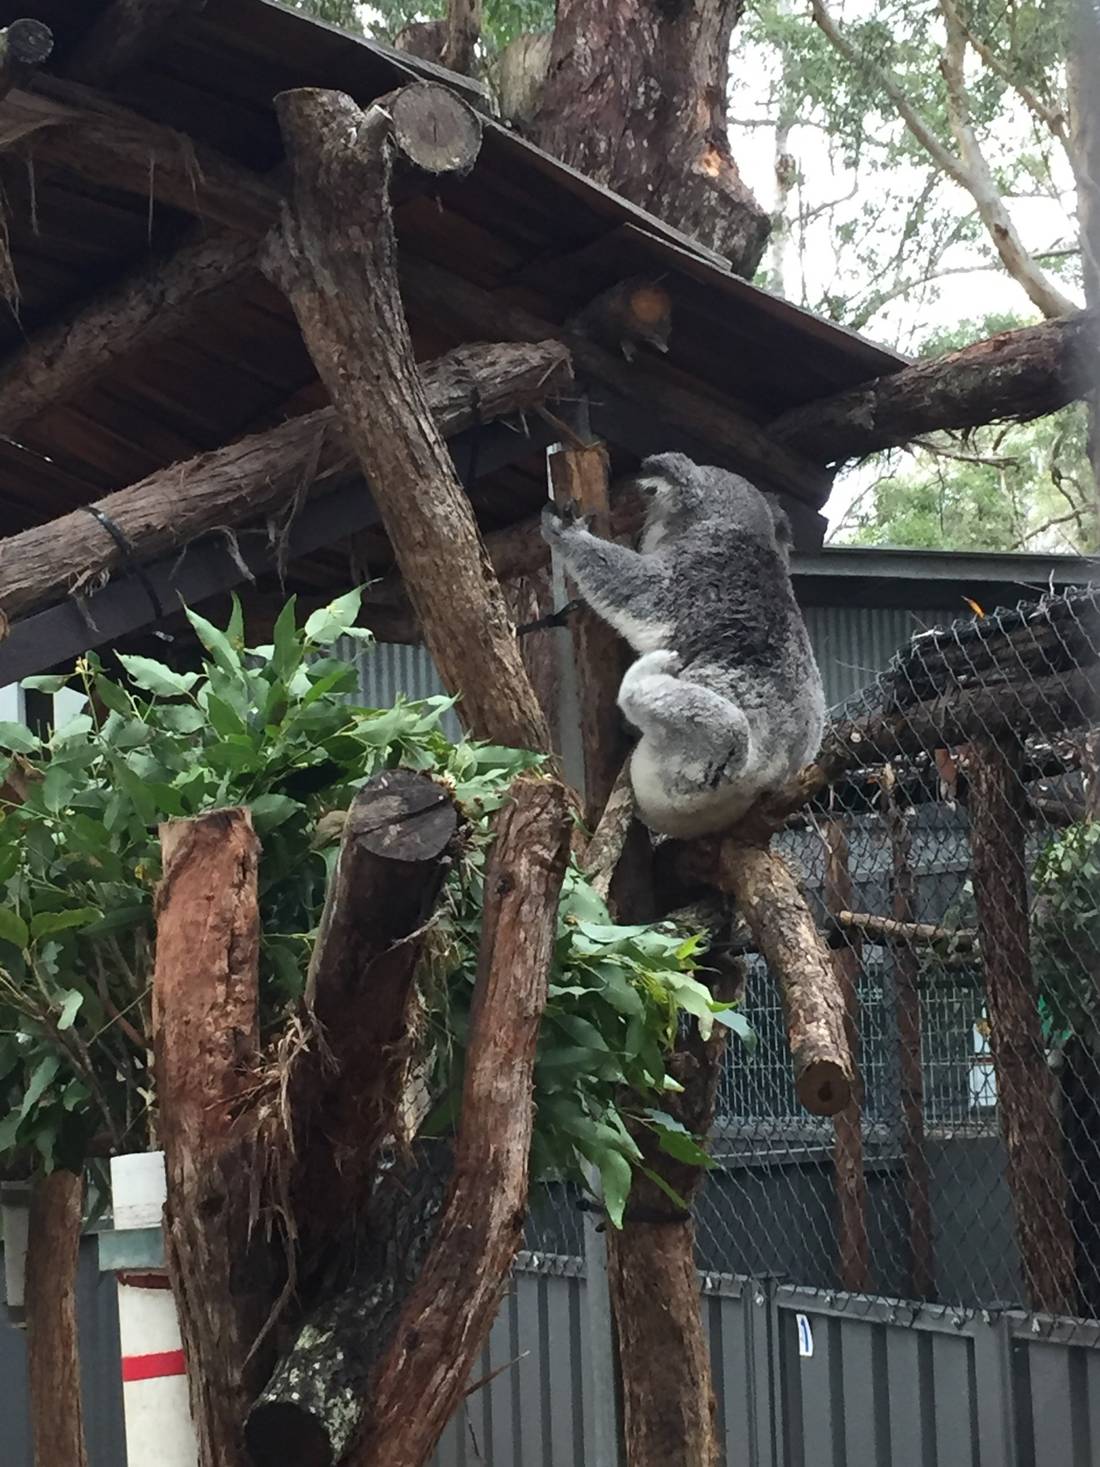 koala in his ranch